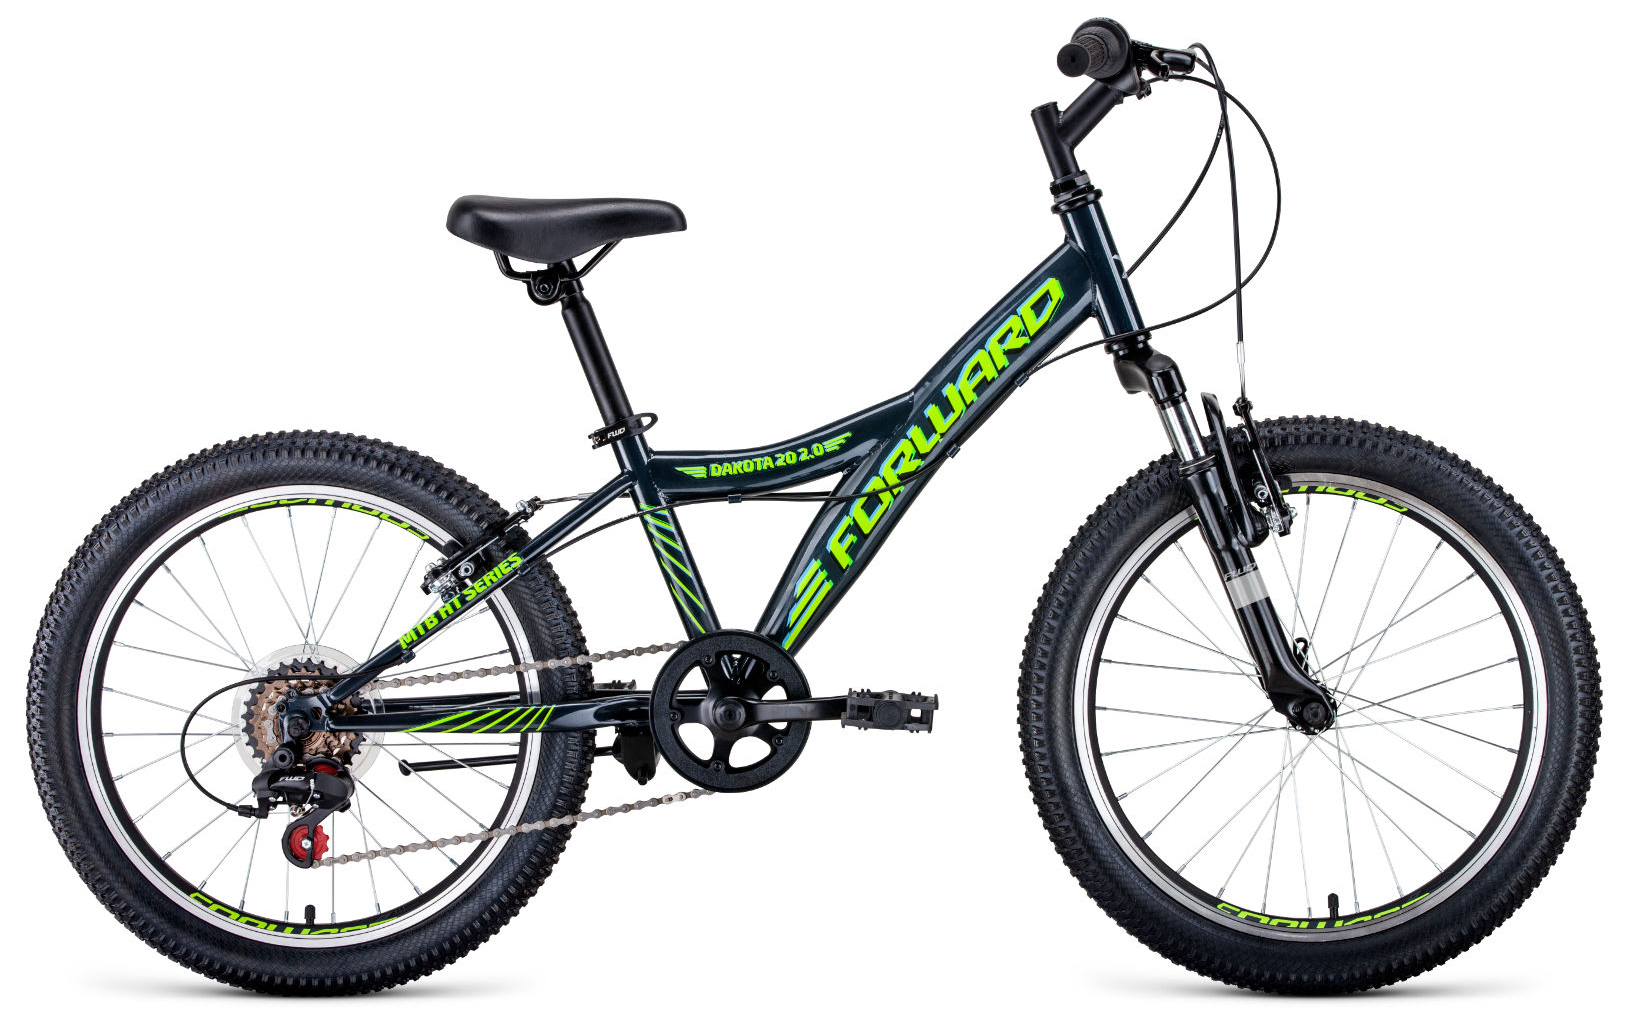  Отзывы о Детском велосипеде Forward Dakota 20 2.0 2020